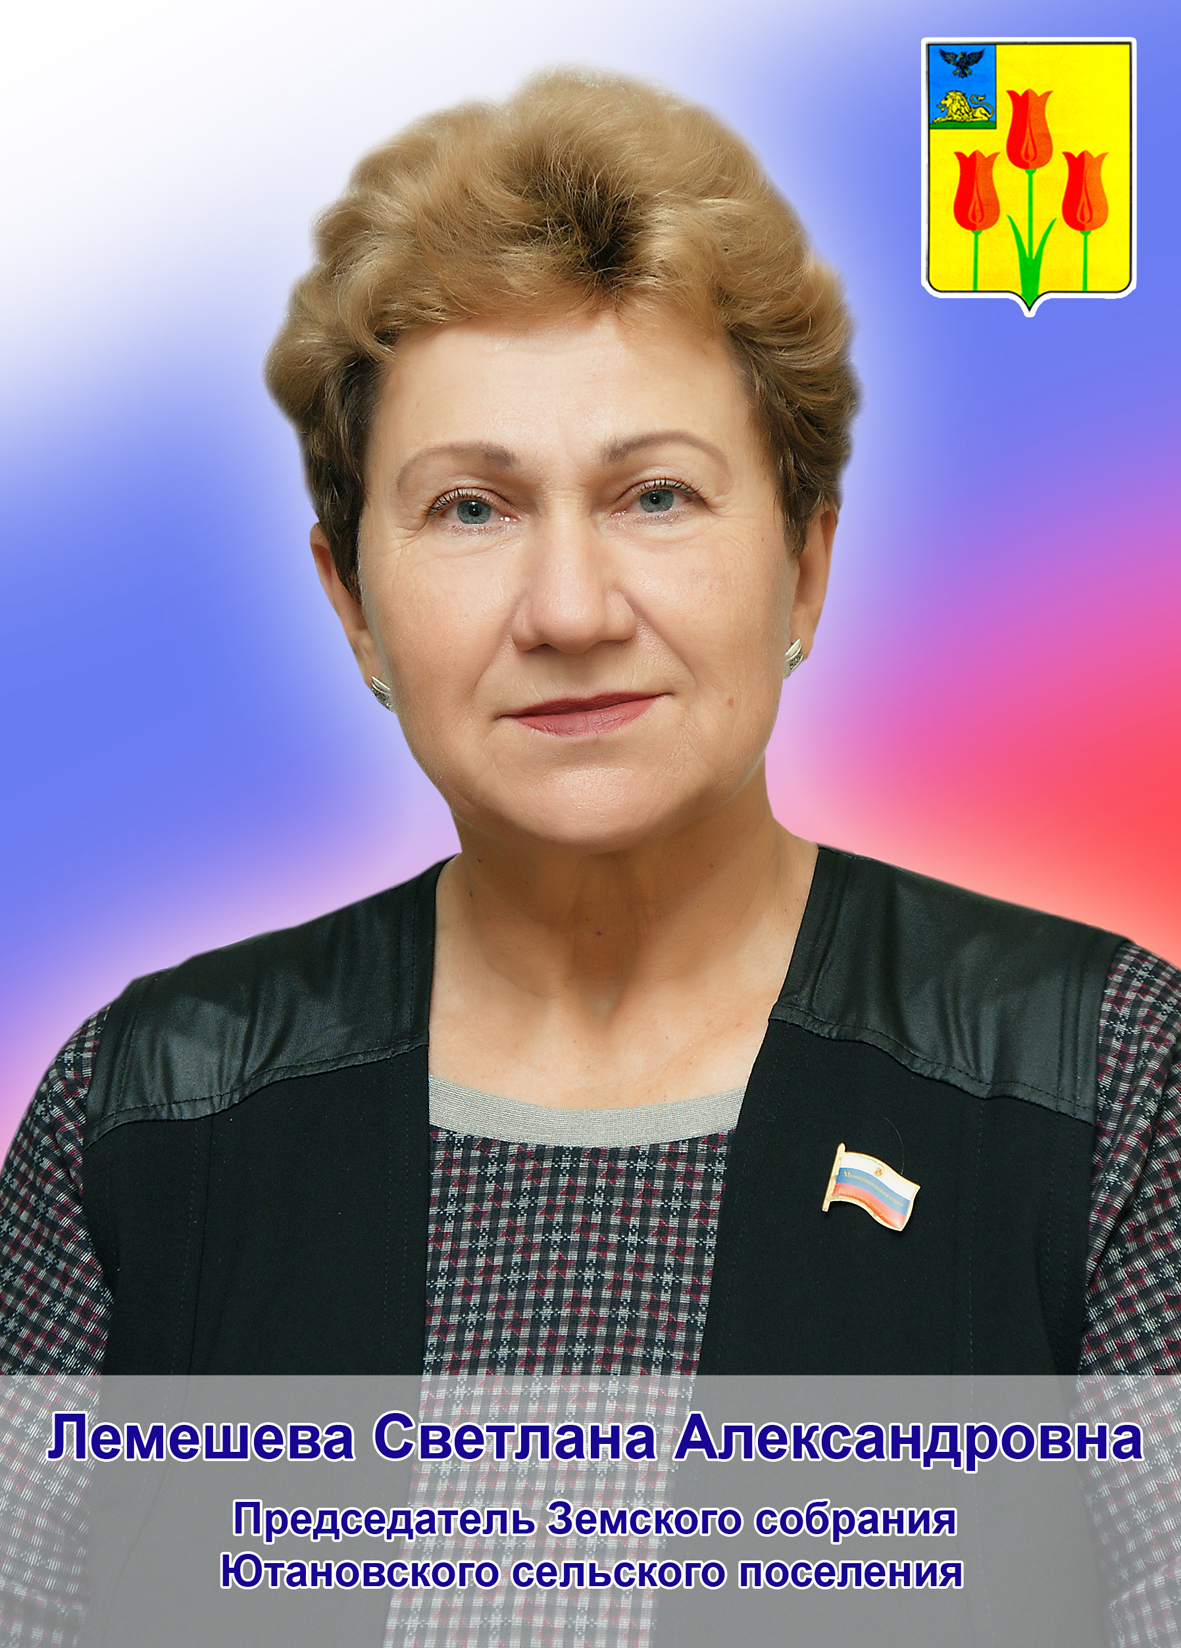 Лемешева Светлана Александровна.